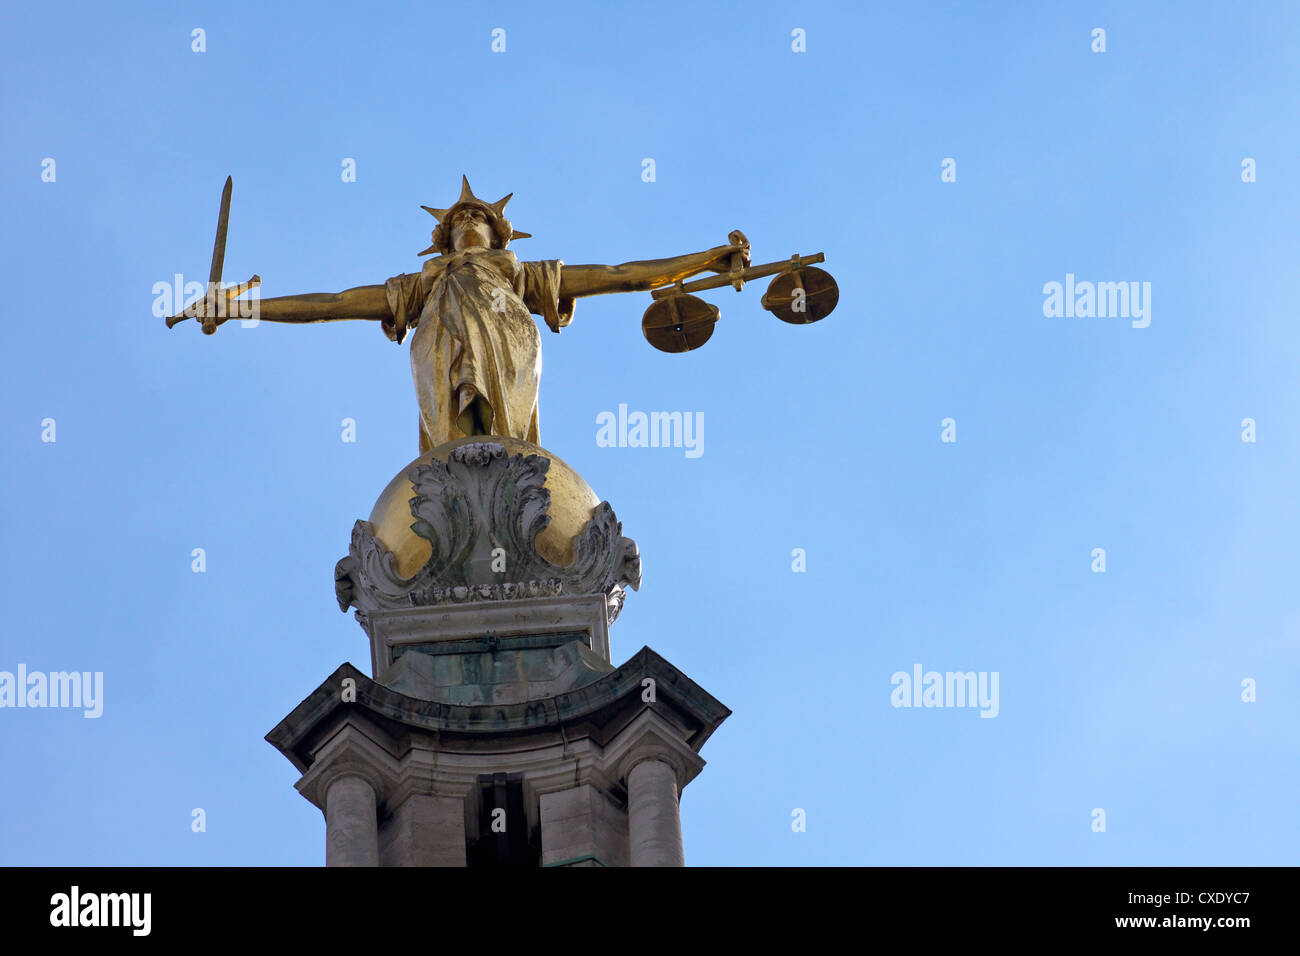 Statue de Dame Justice avec épée, échelles et bandeau, Old Bailey, la Cour pénale centrale, Londres, Angleterre, Royaume-Uni Banque D'Images